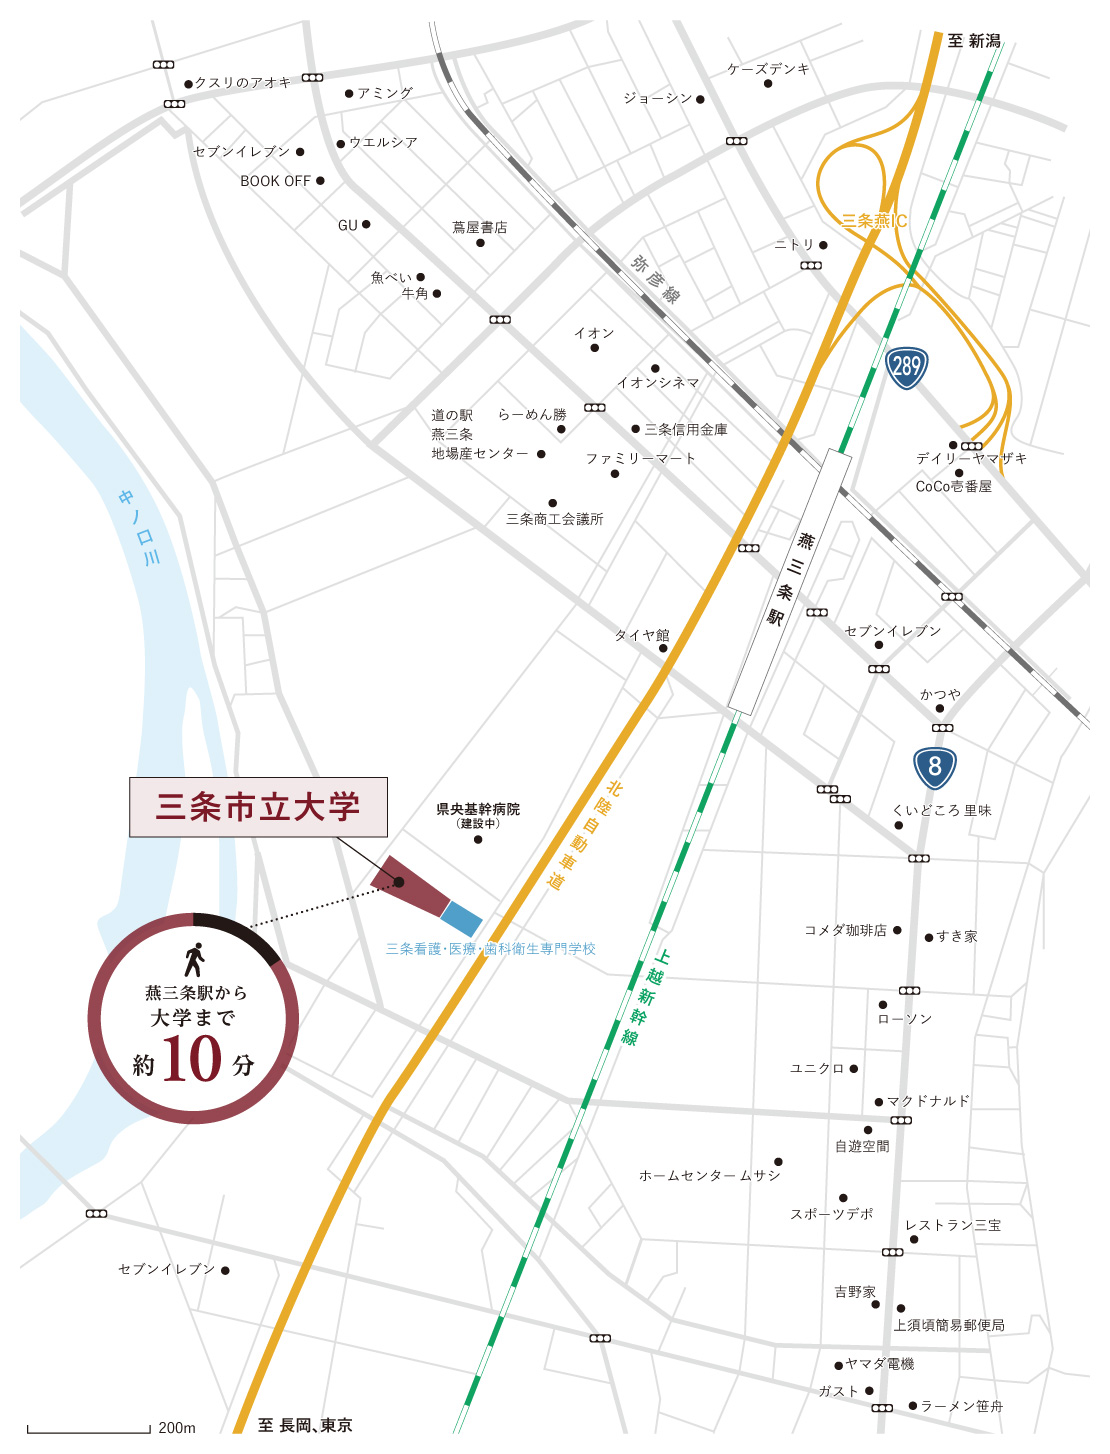 燕三条駅から大学への地図が描かれています。燕三条駅から大学までは徒歩約10分です